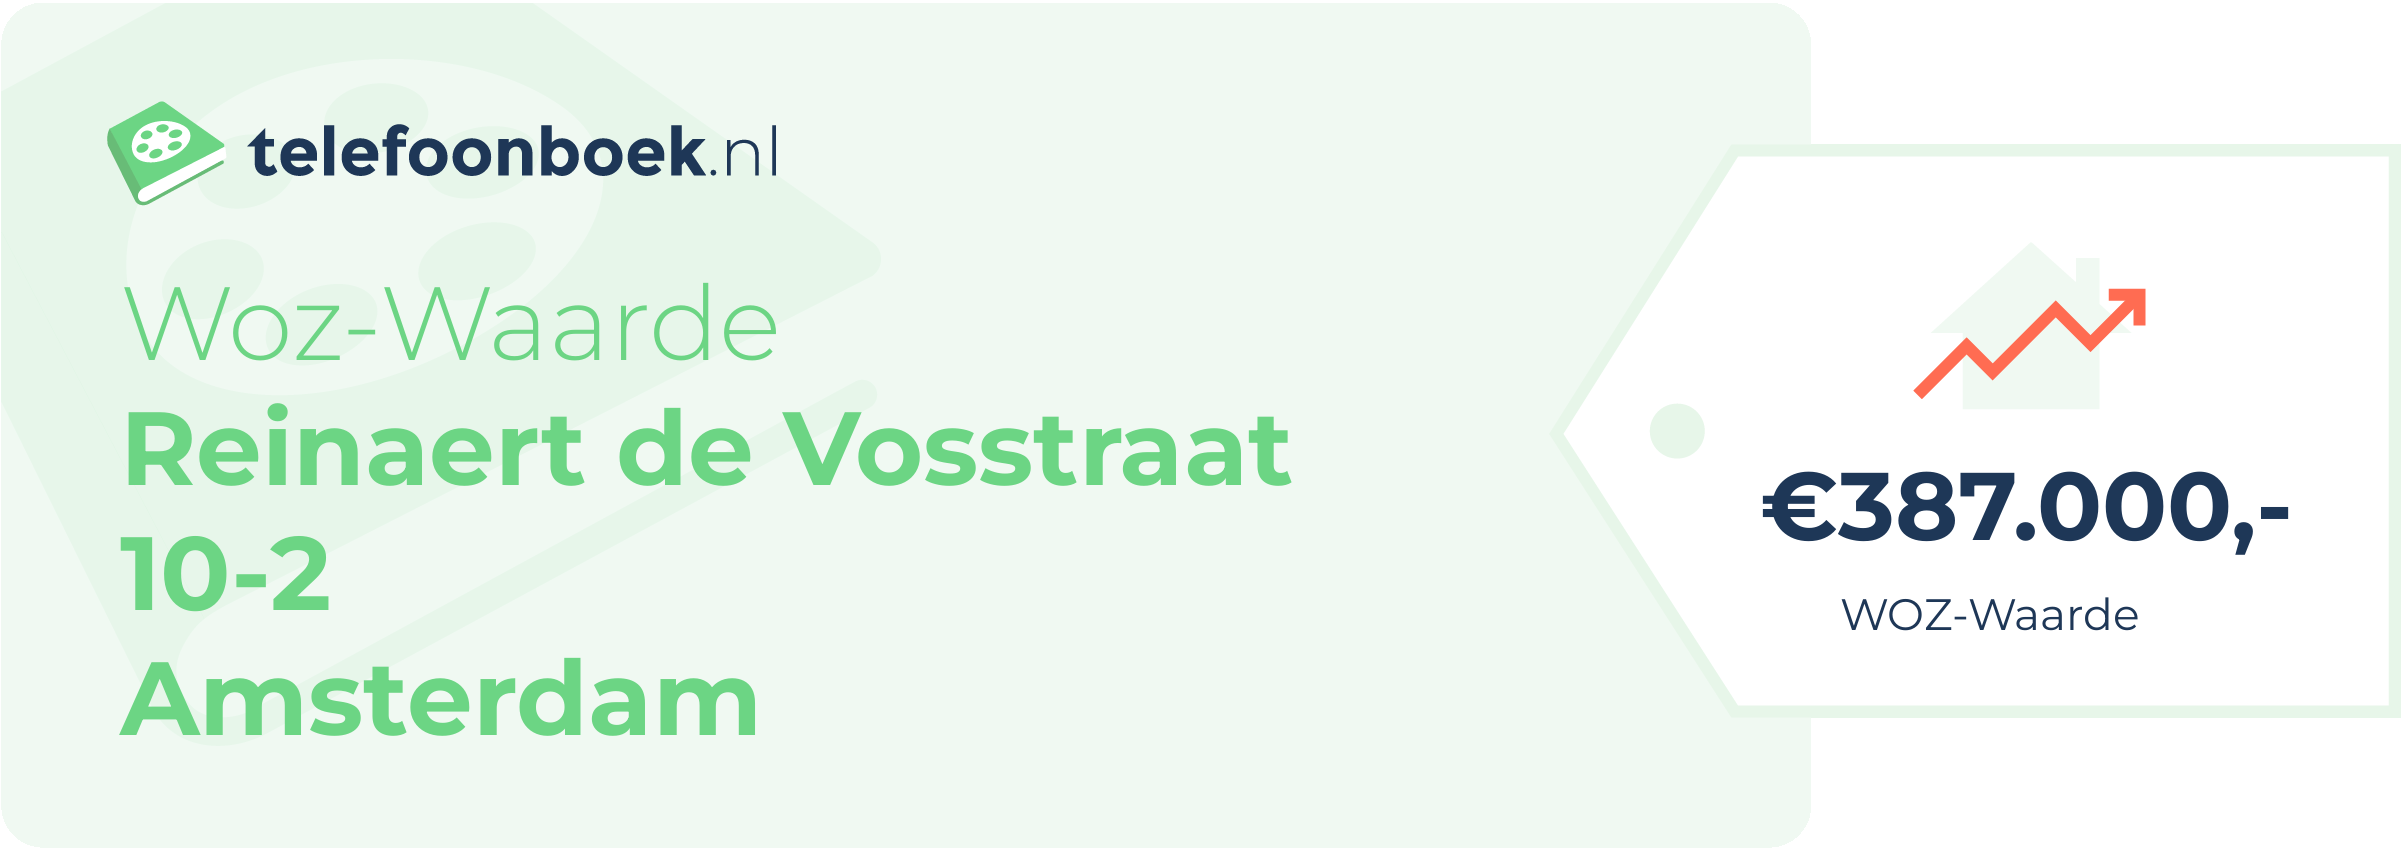 WOZ-waarde Reinaert De Vosstraat 10-2 Amsterdam